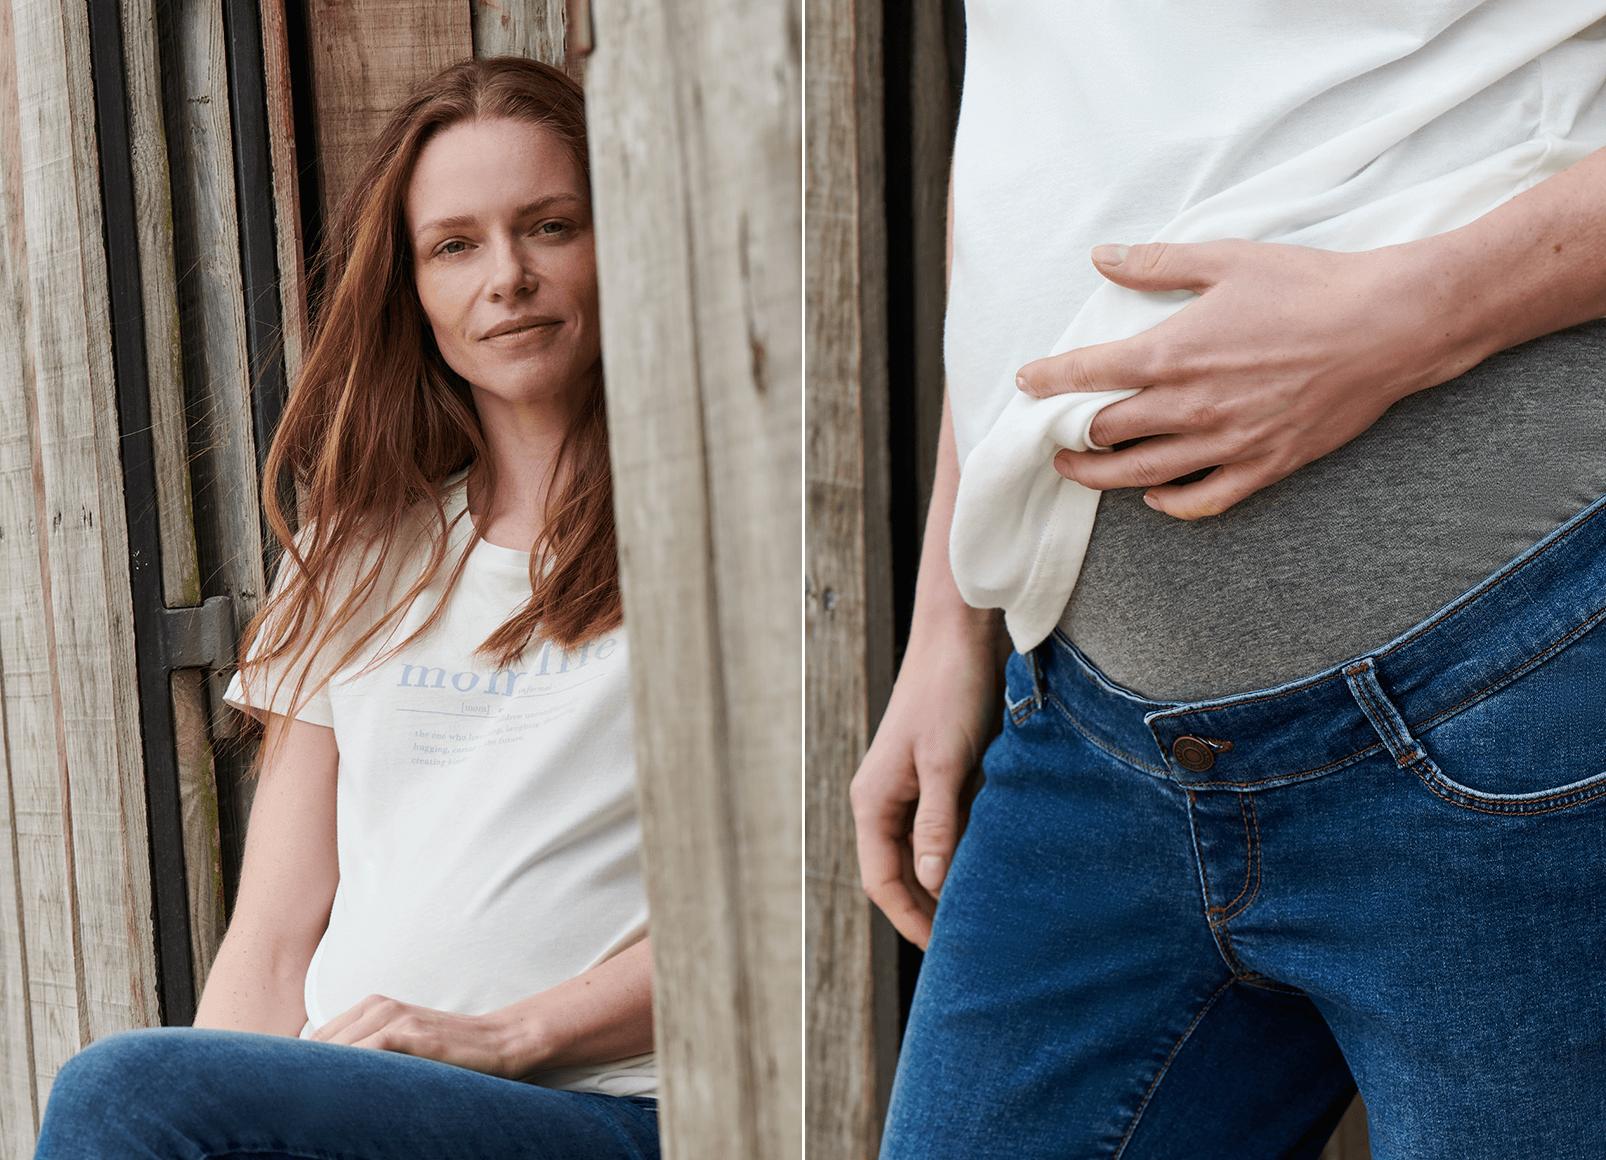 Jeans premaman e maglia bianca: un look dal comfort imbattibile.
                                 Pantaloni premaman con fascia sopra il pancione per il massimo comfort. 